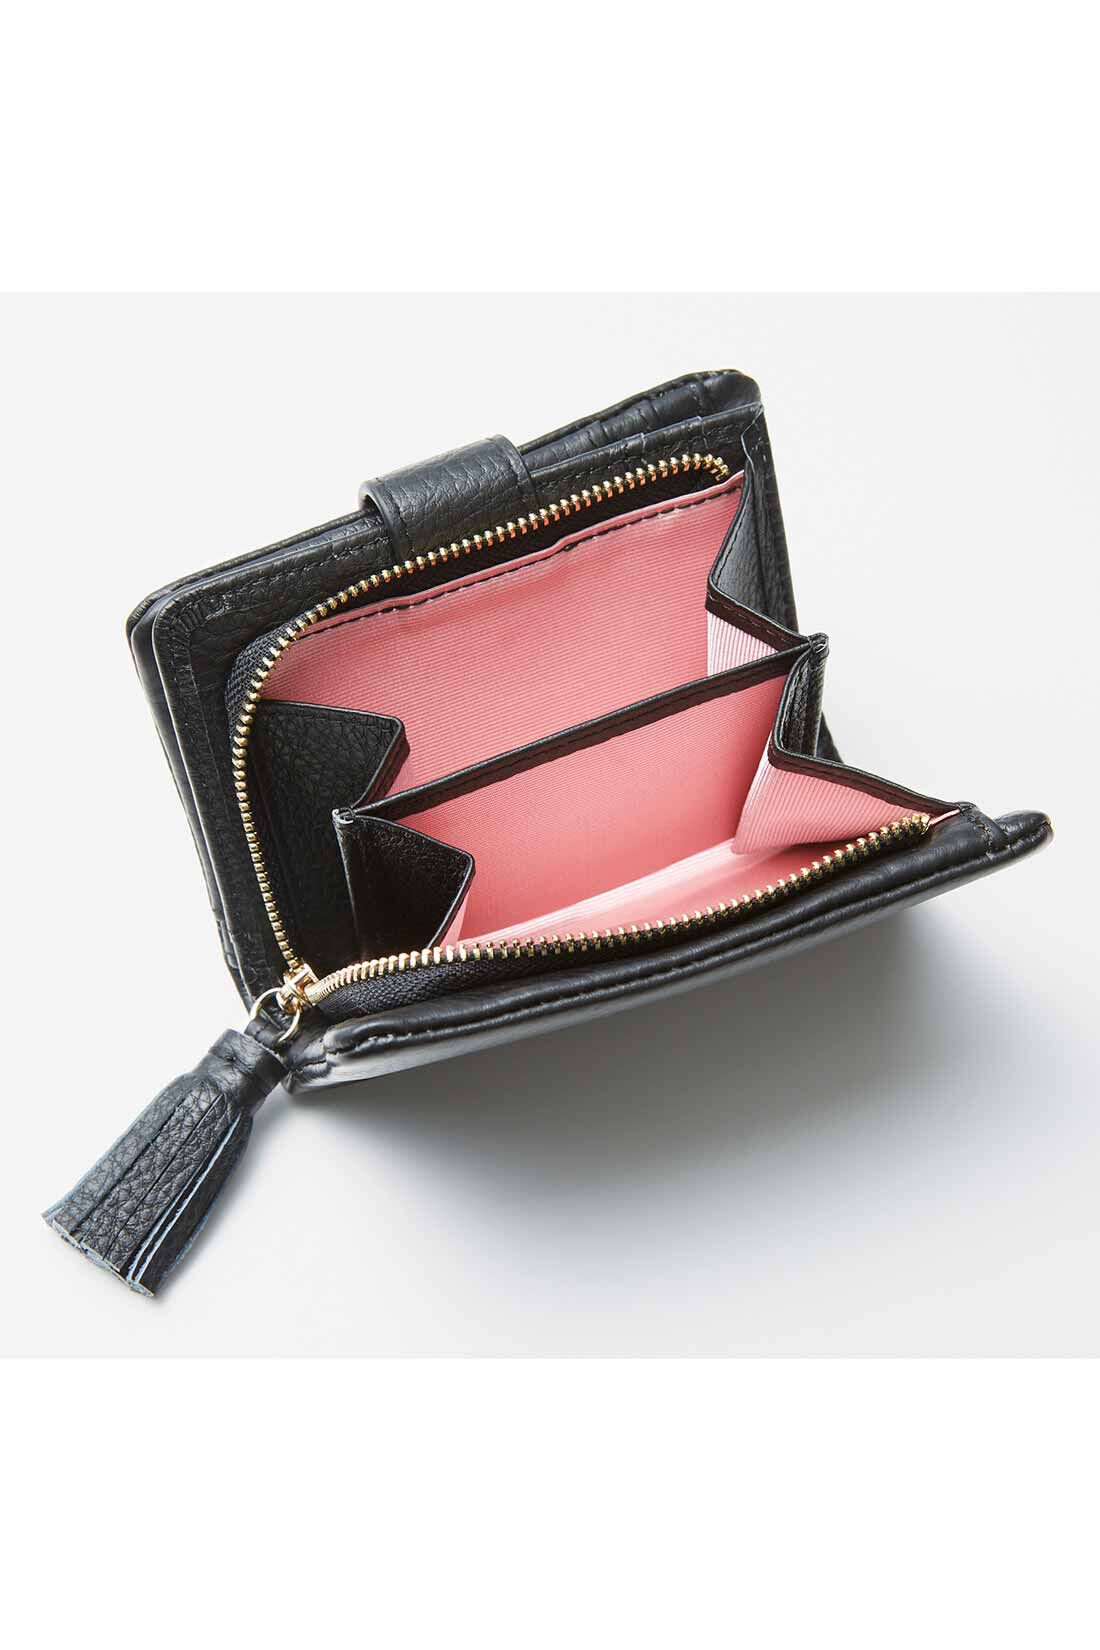 IEDIT|IEDIT[イディット]　くったり本革素材できれいめ二つ折り財布〈ブラック〉|大きく開くサイドまち付きで、小銭の出し入れもらくらく。内側は気分が上がるカラーに。